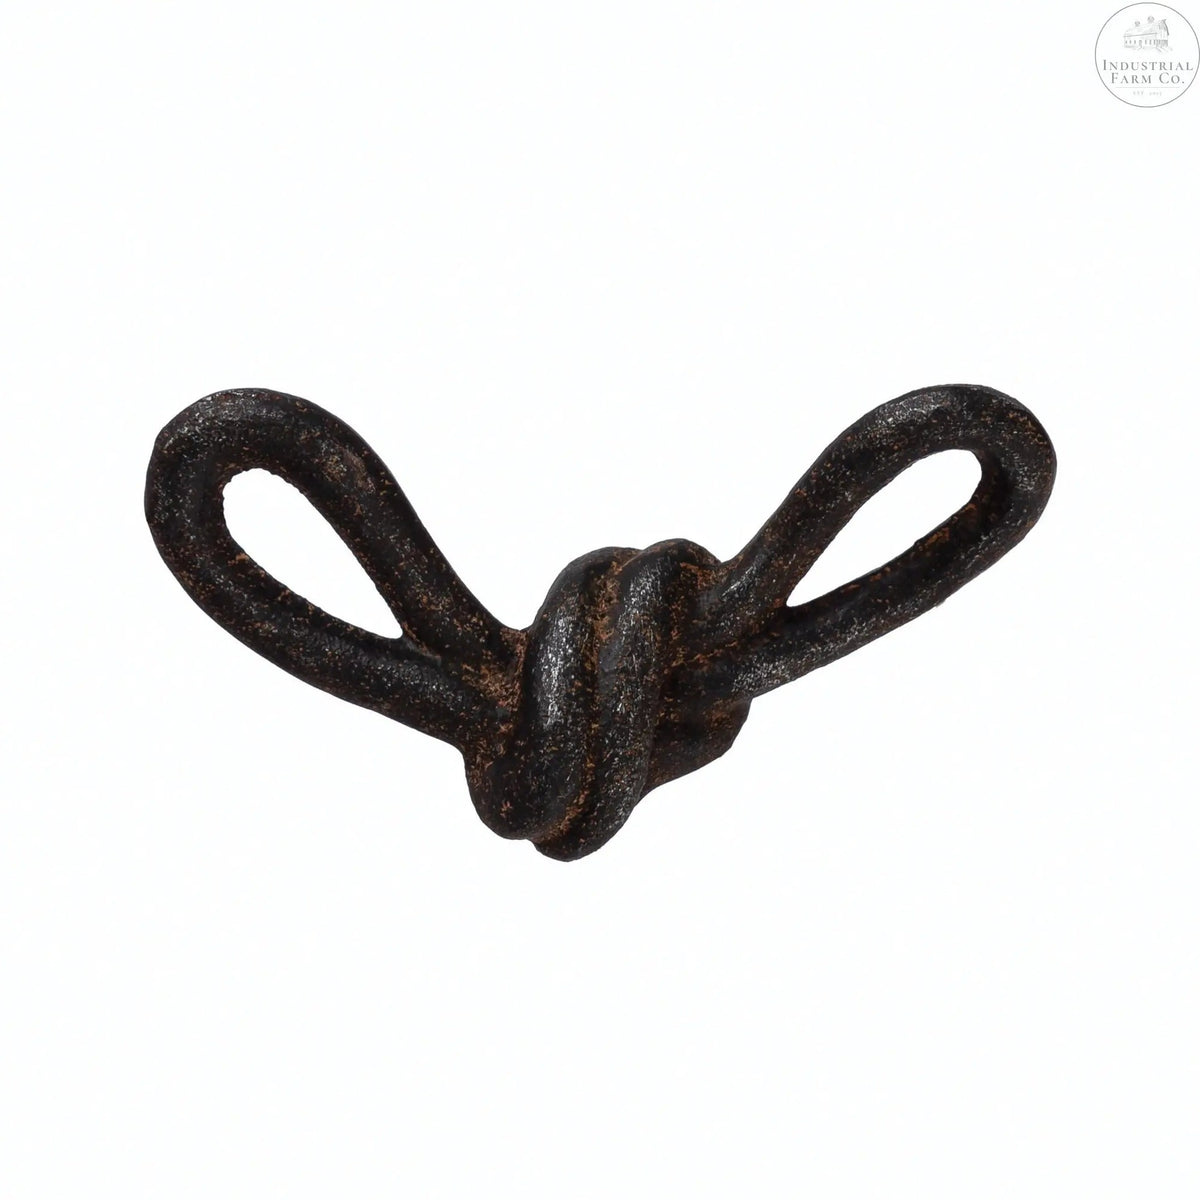 Industrial Cast Iron Decorative Knot  Default Title   | Industrial Farm Co